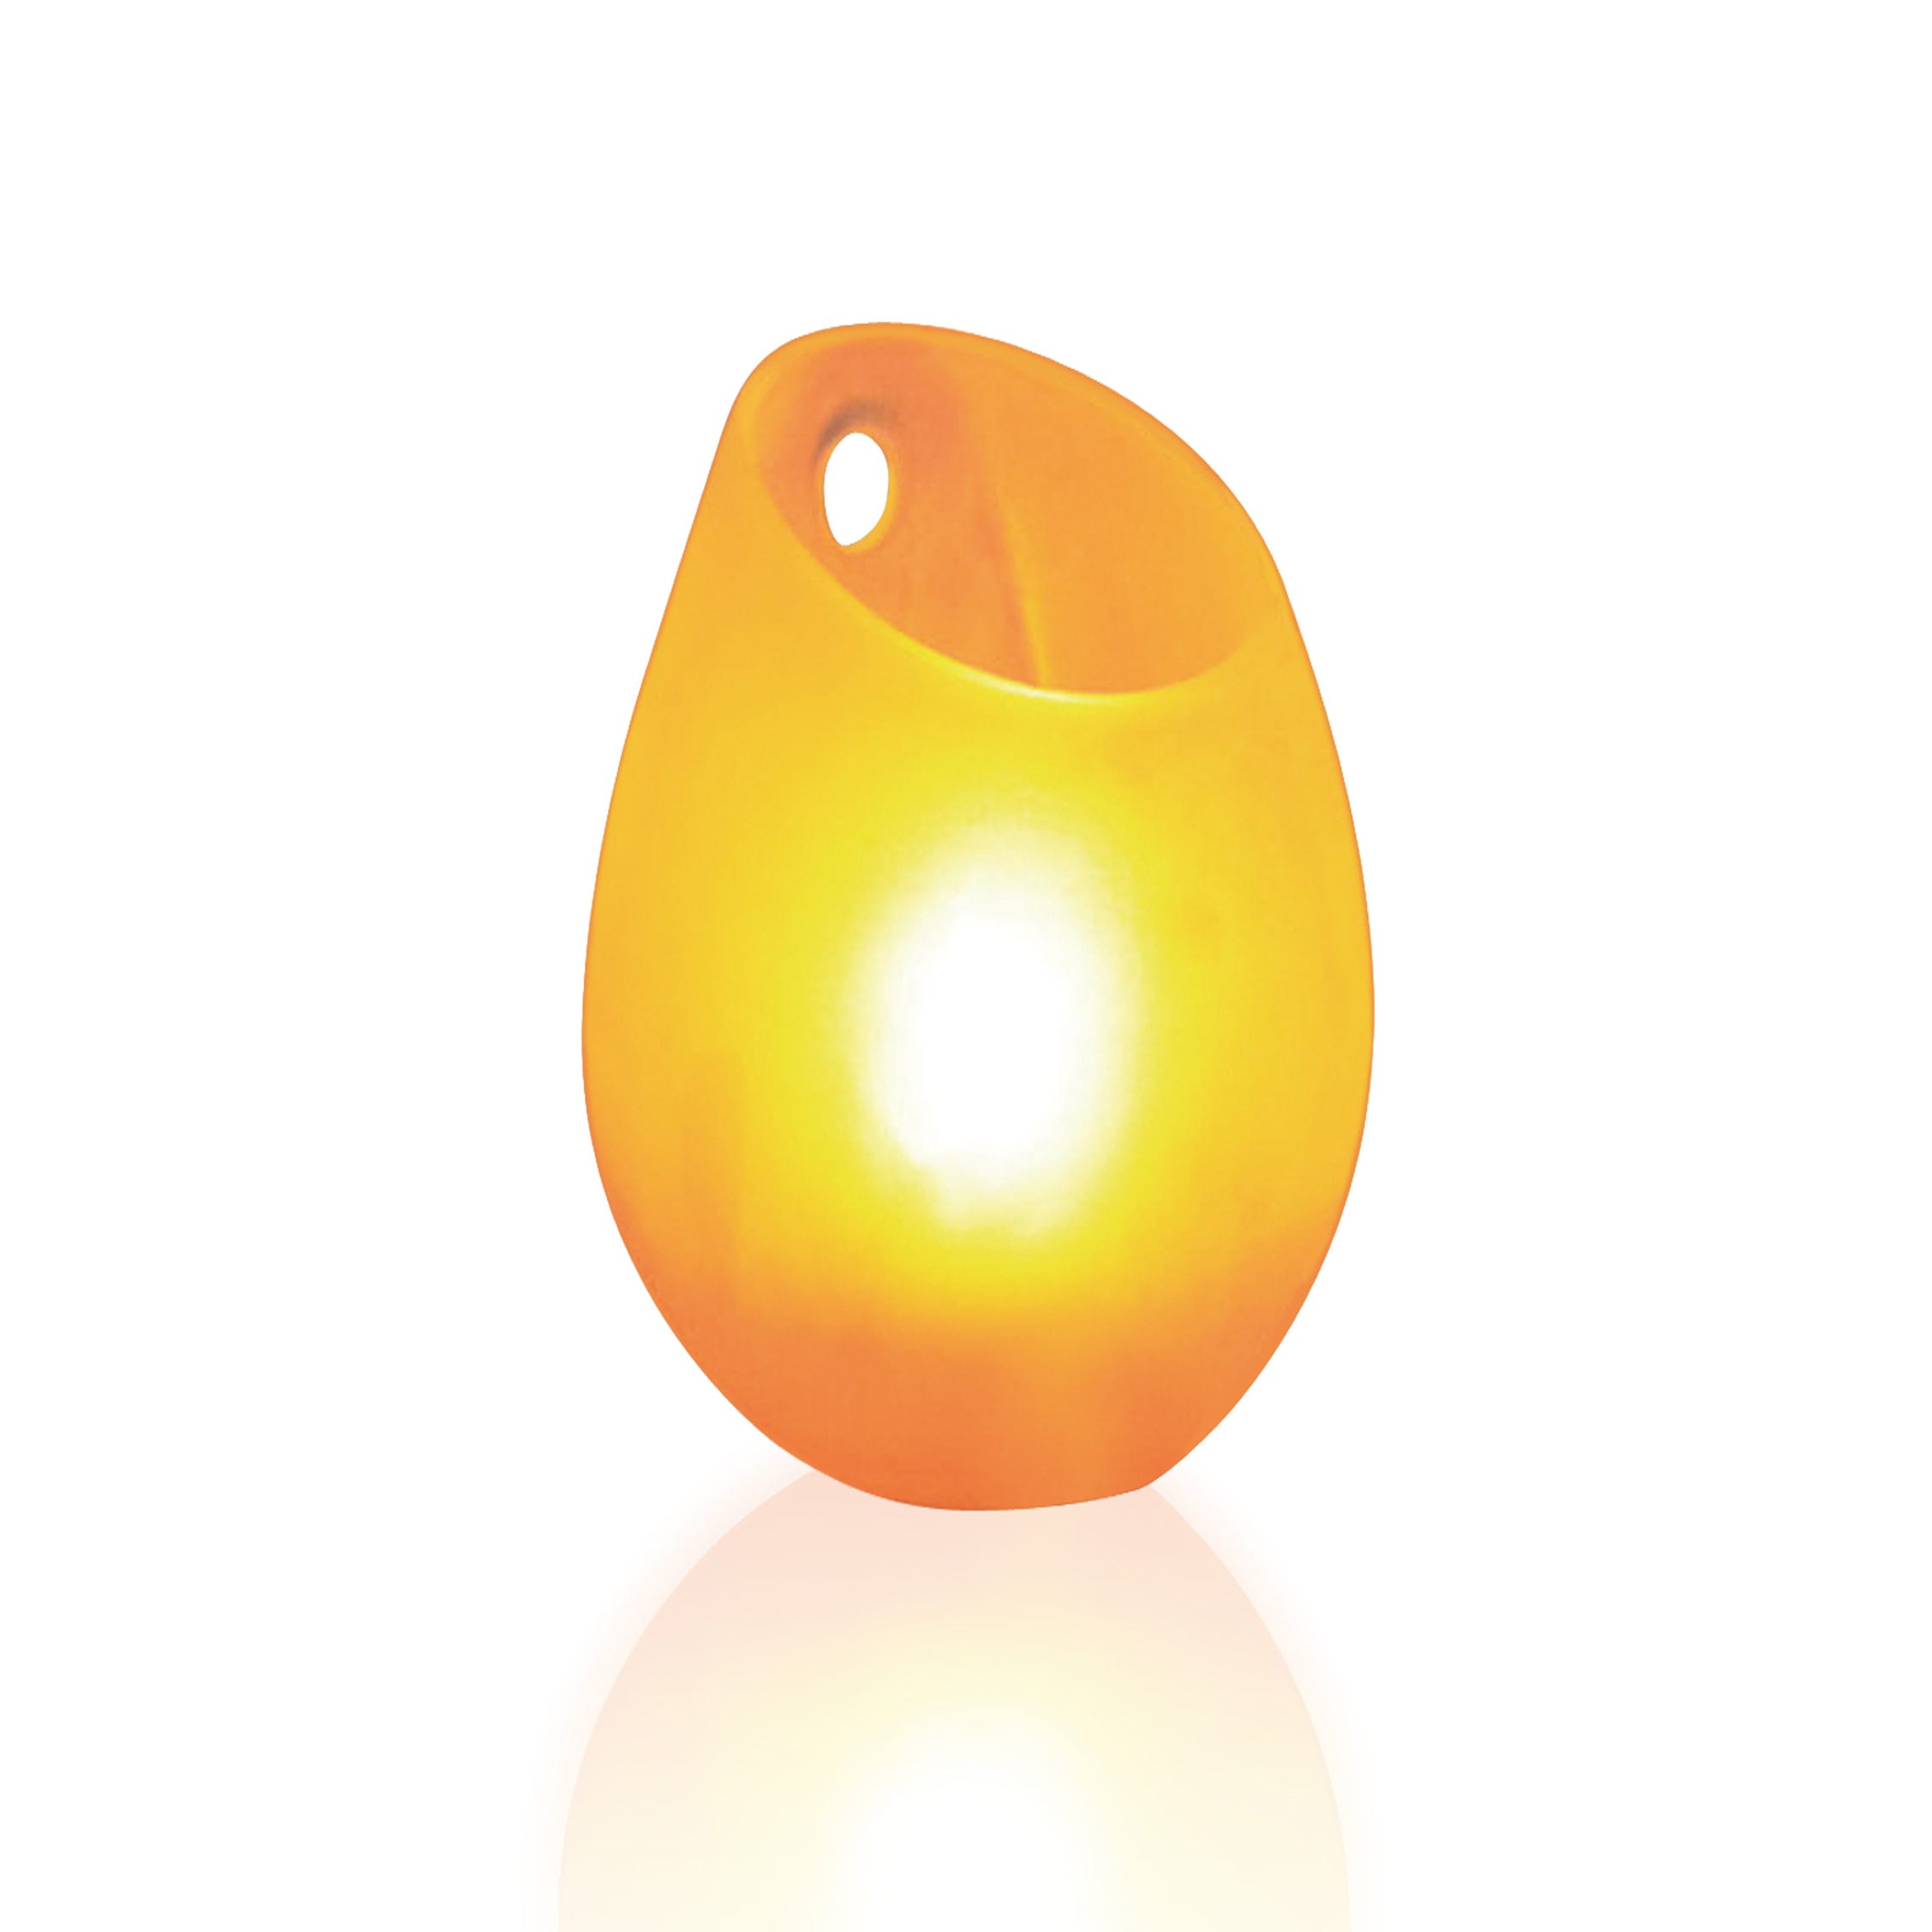 Bougies LED: les avantages par rapport aux bougies traditionnelles